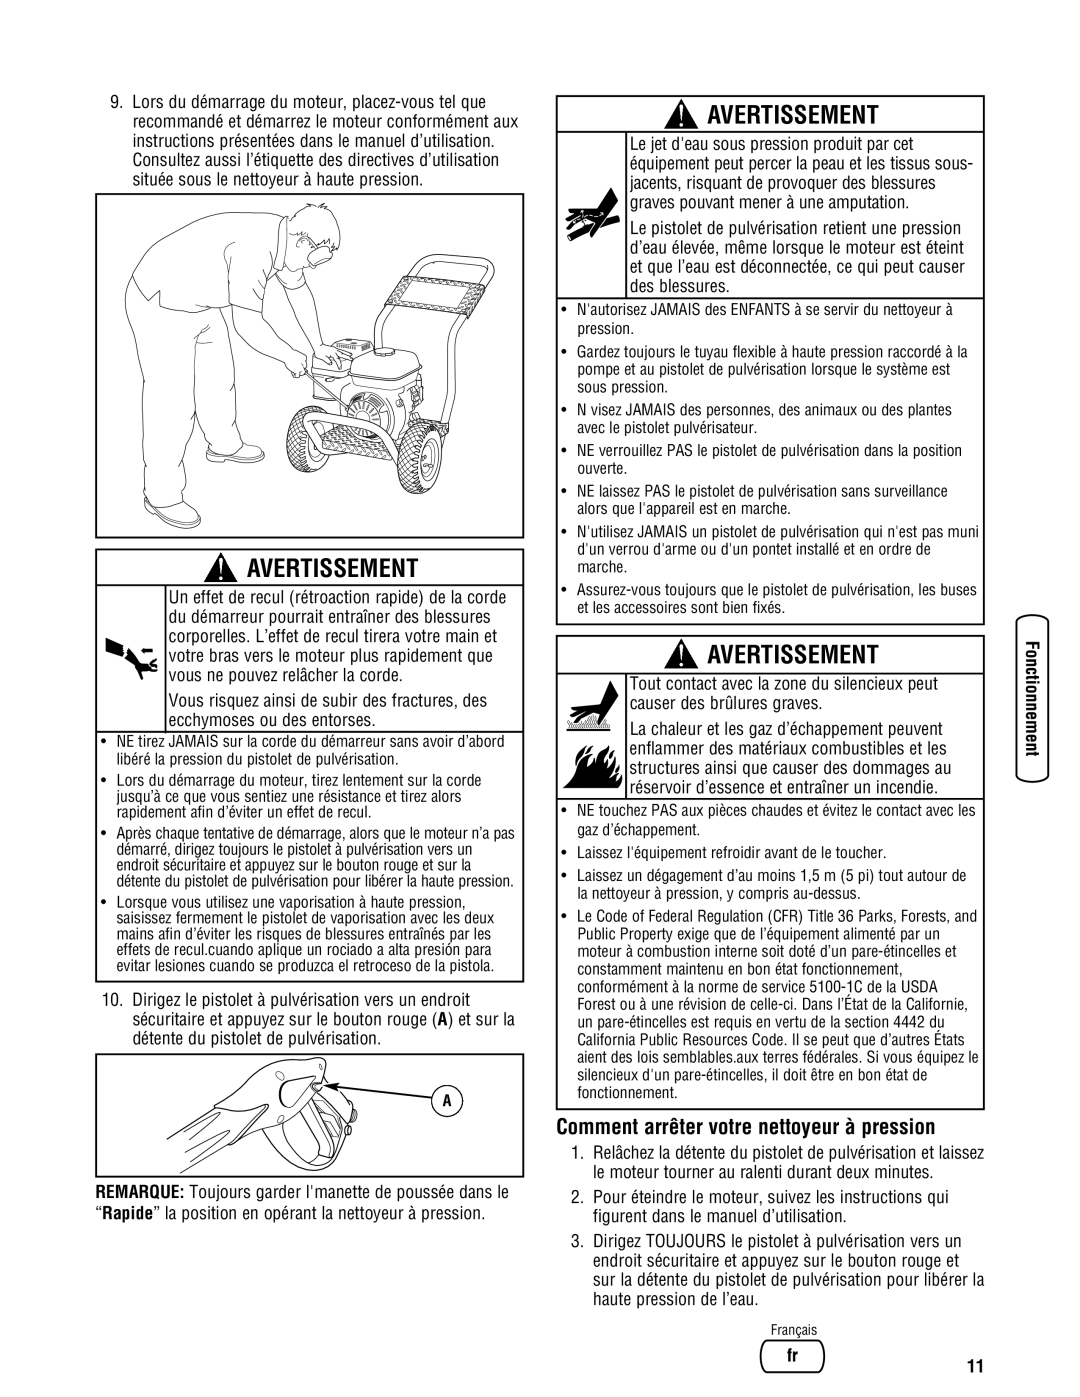 Diamond Power Products 3100 Psi manual Comment arrêter votre nettoyeur à pression, Avertissement 